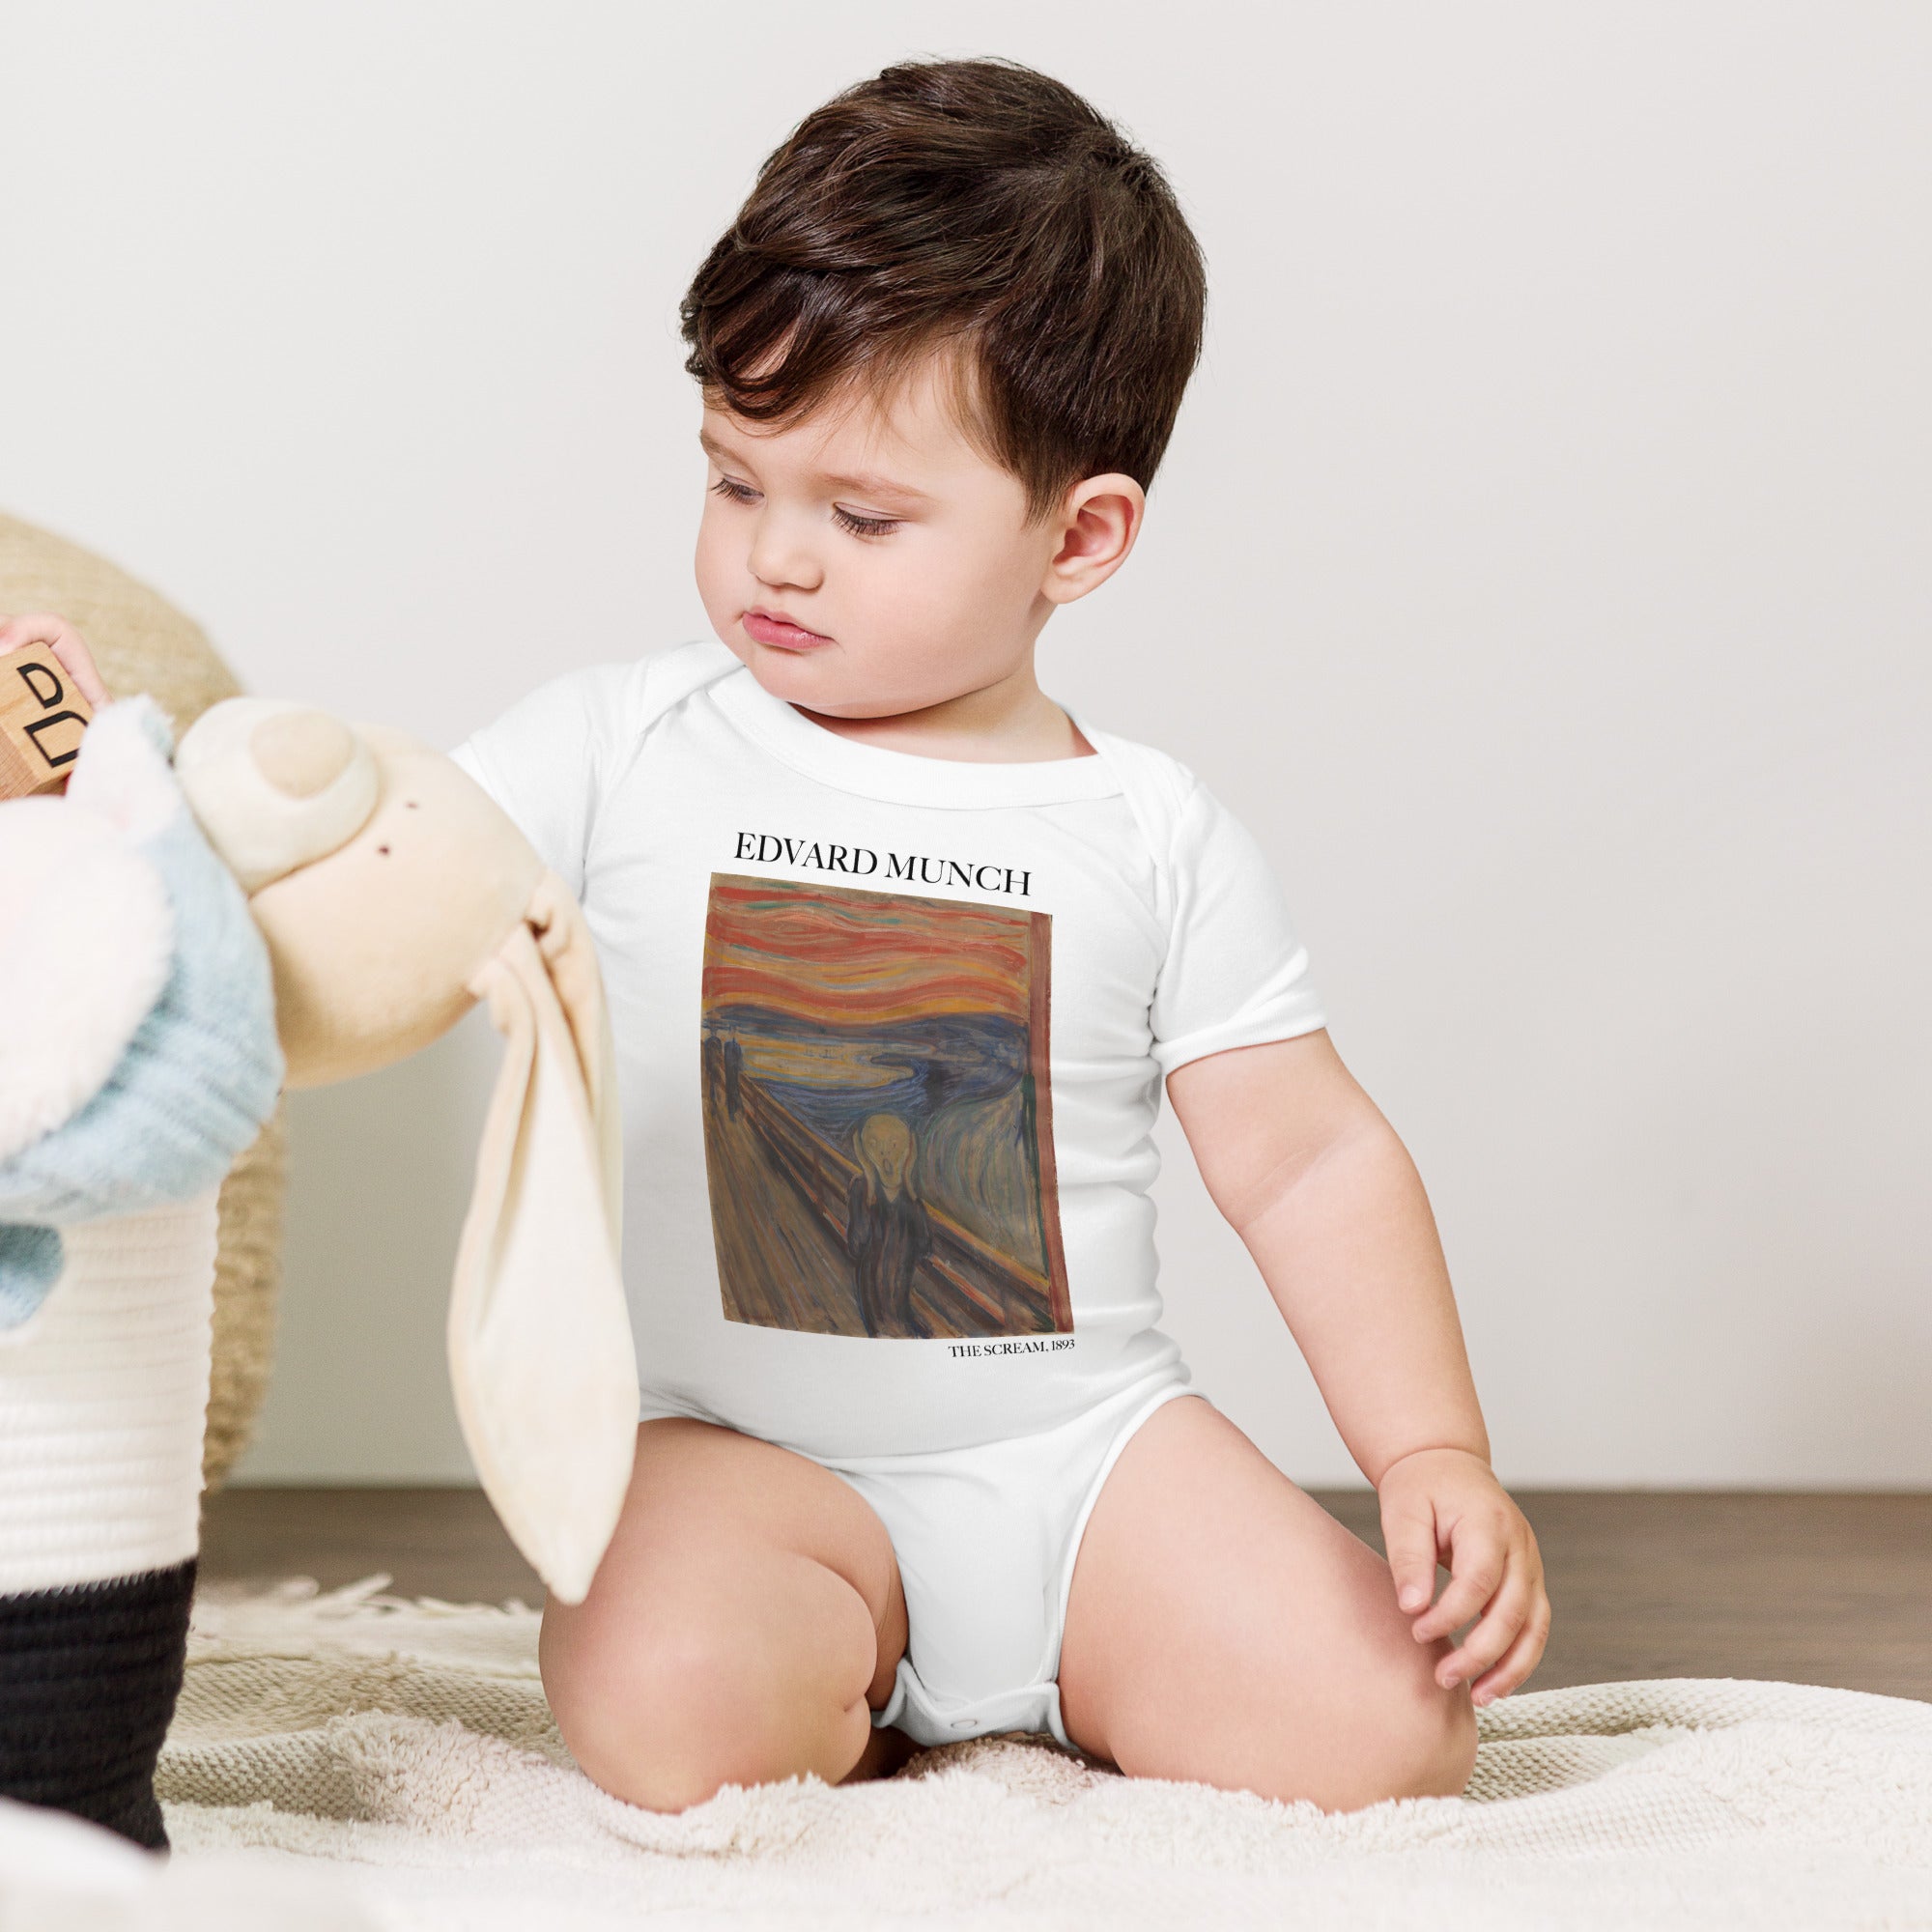 Kurzärmliger Einteiler „Der Schrei“ von Edvard Munch, berühmtes Gemälde | Premium Baby Art Einärmliger